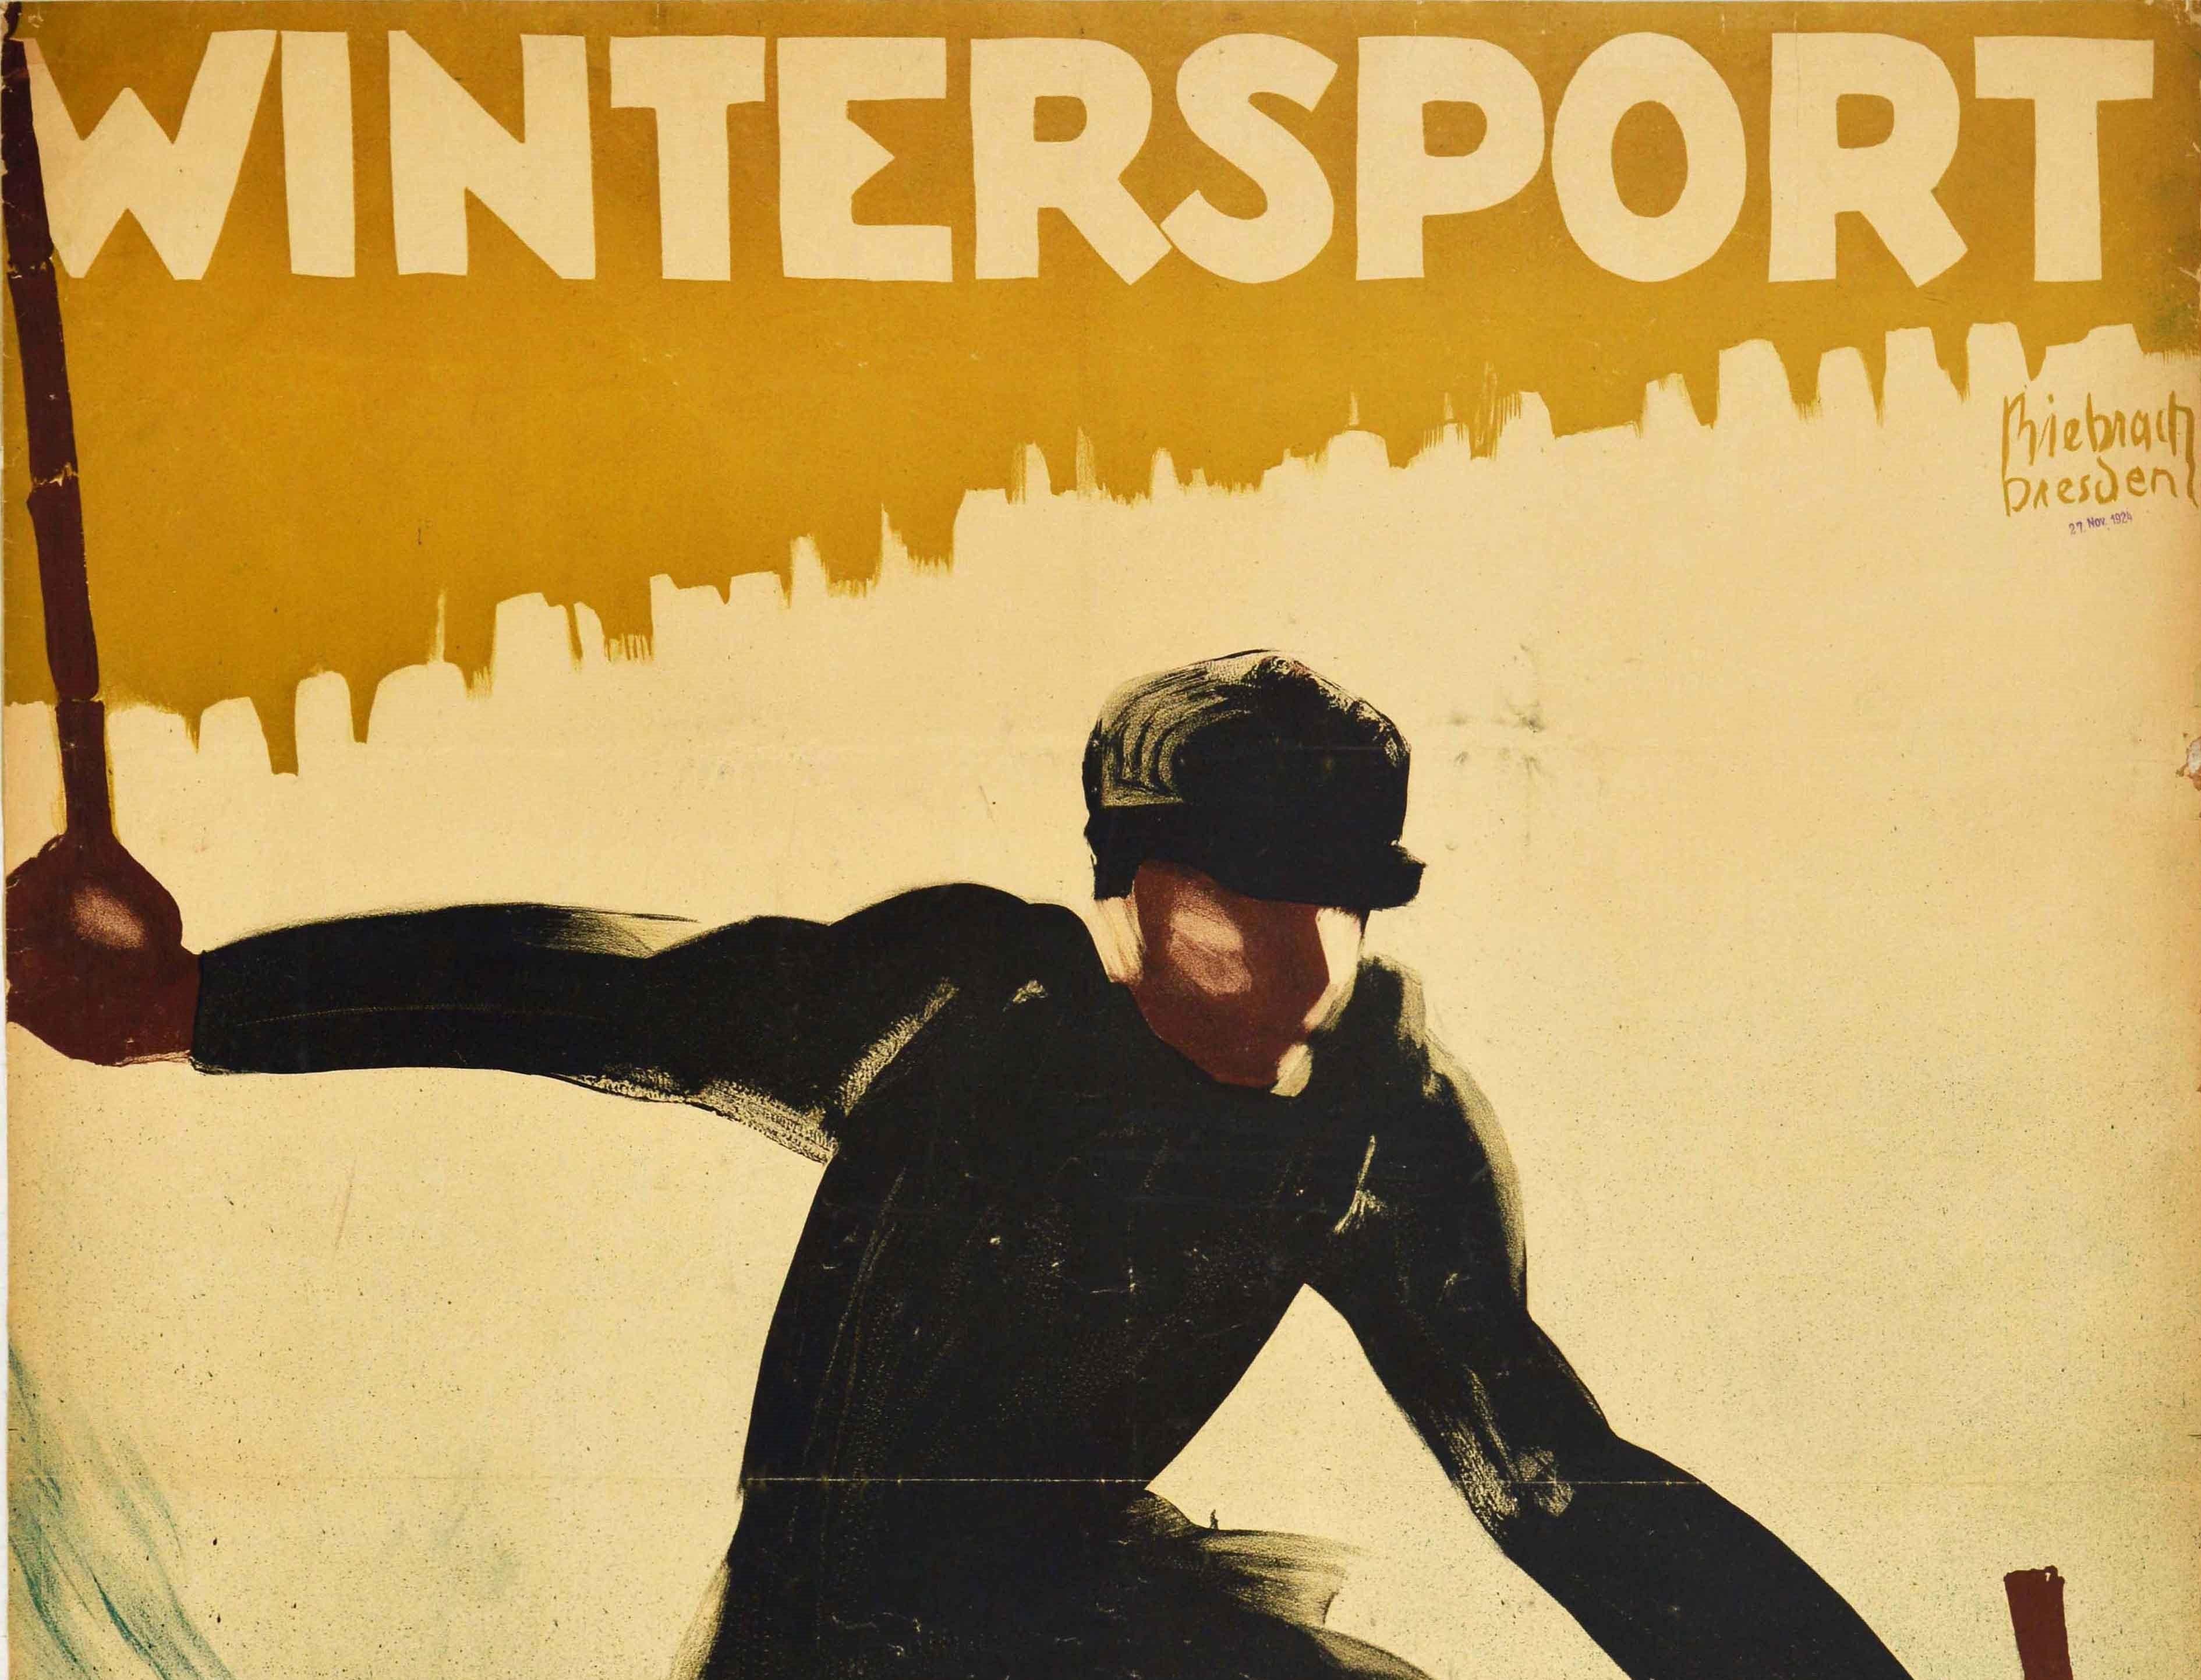 Affiche de ski vintage originale intitulée Wintersport, avec un dessin dynamique de Karl Biebrach (né en 1882) représentant un skieur vêtu de noir dévalant à toute vitesse une pente enneigée sur des skis en bois, avec le titre en lettres stylisées